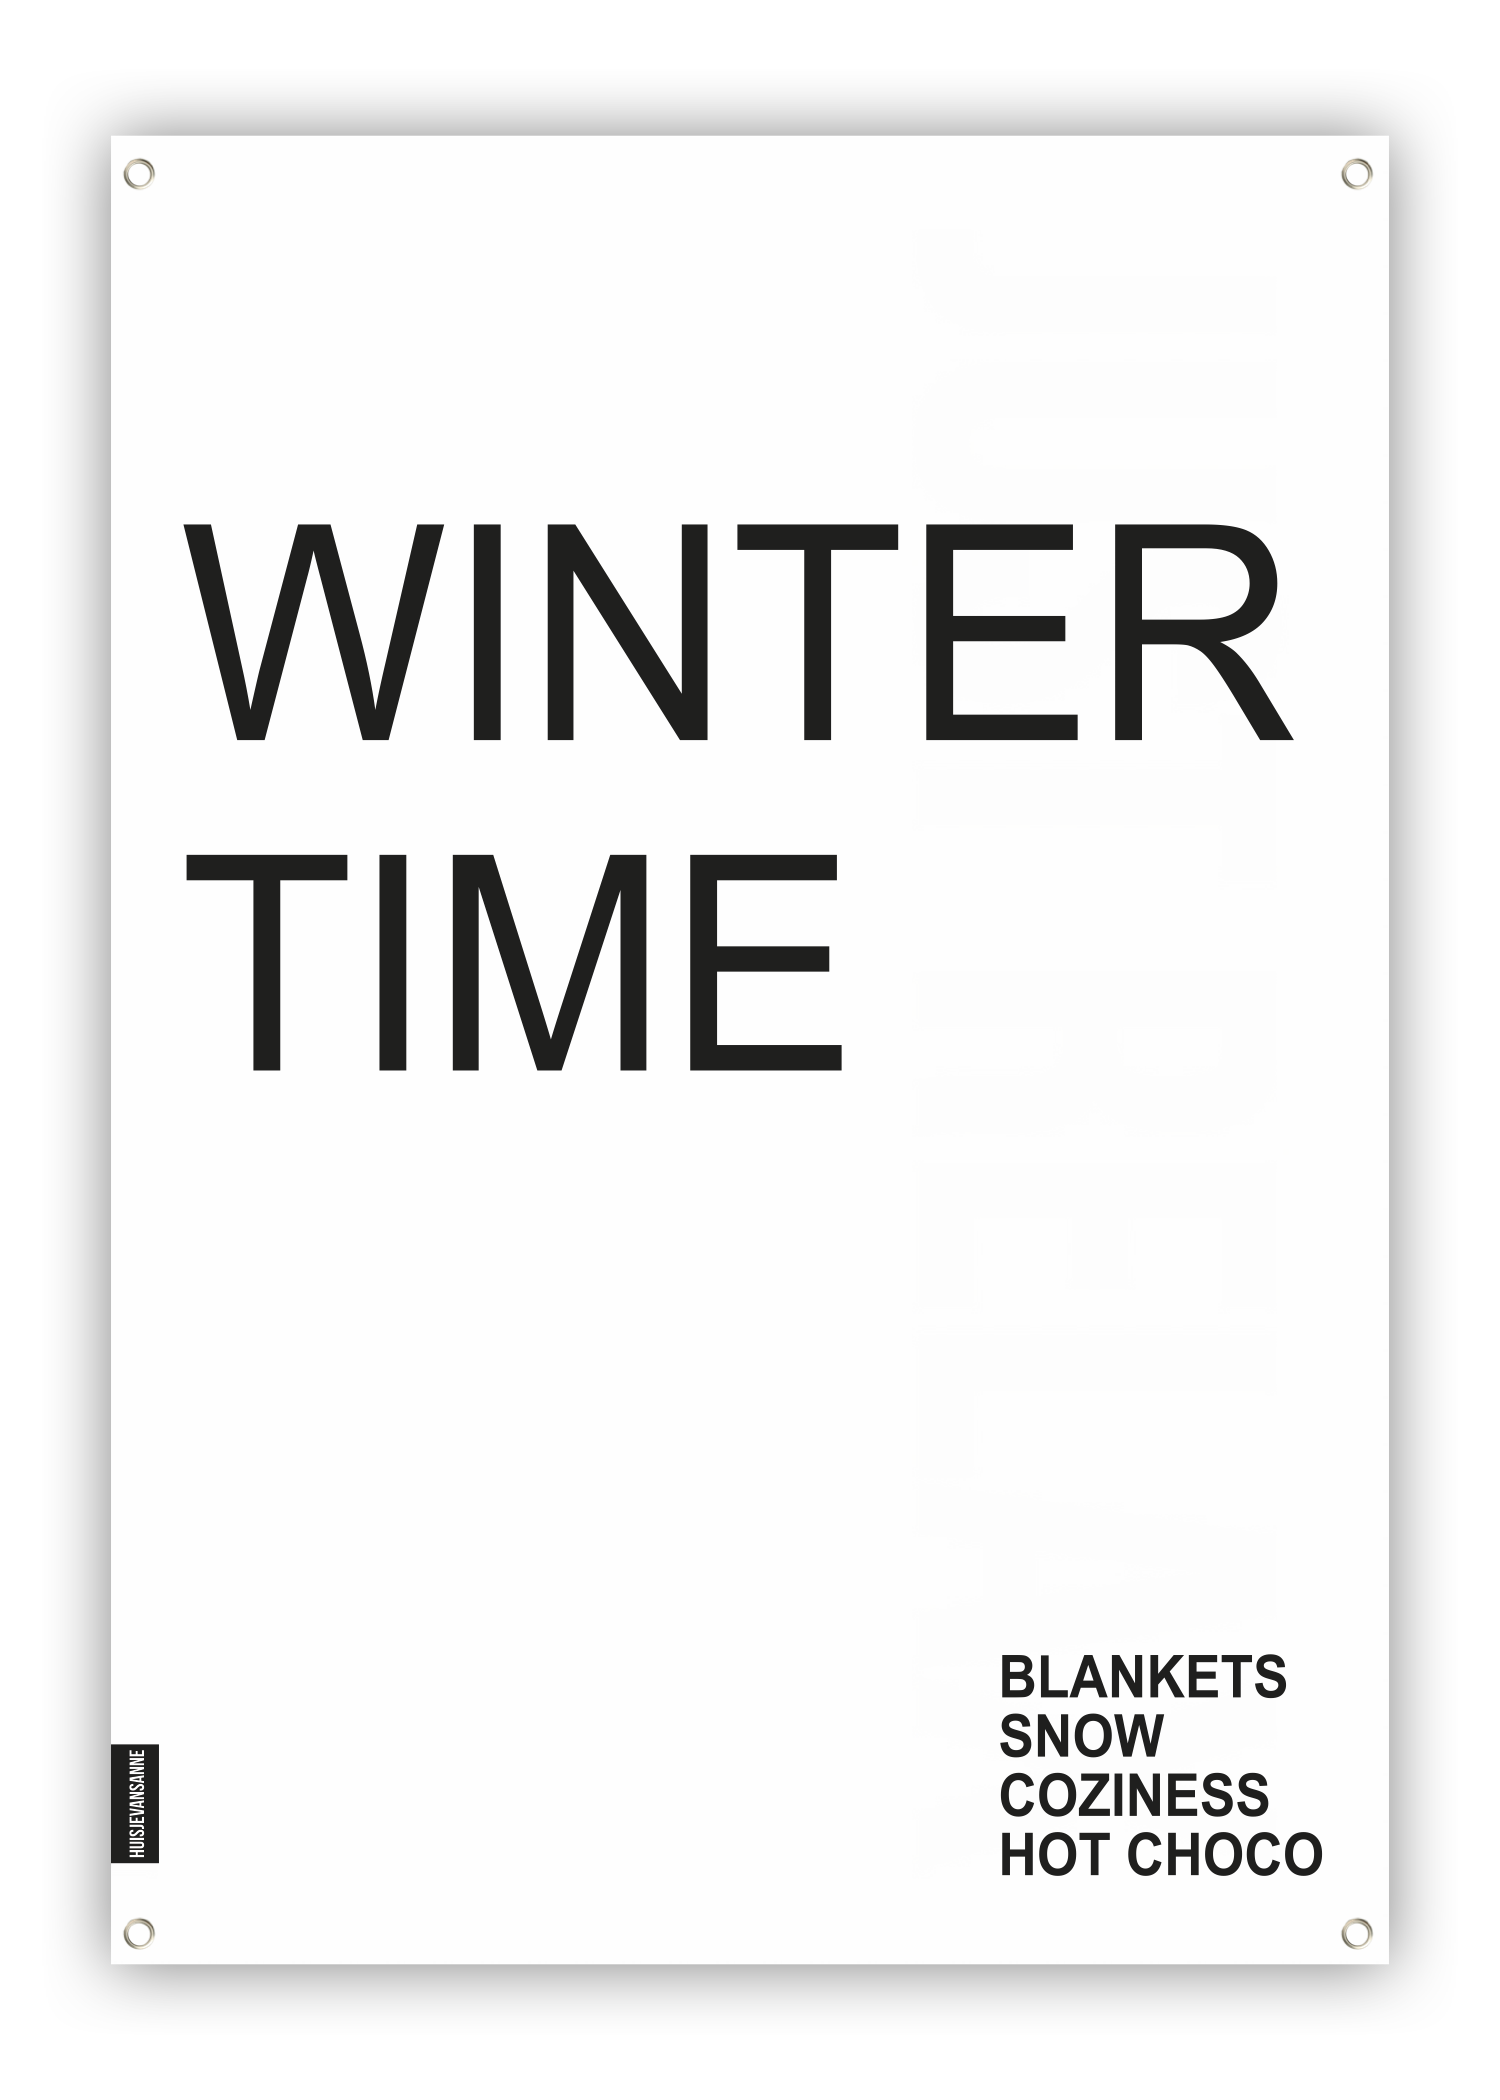 huisje van sanne tuinposter zwart wit met tekst winter time